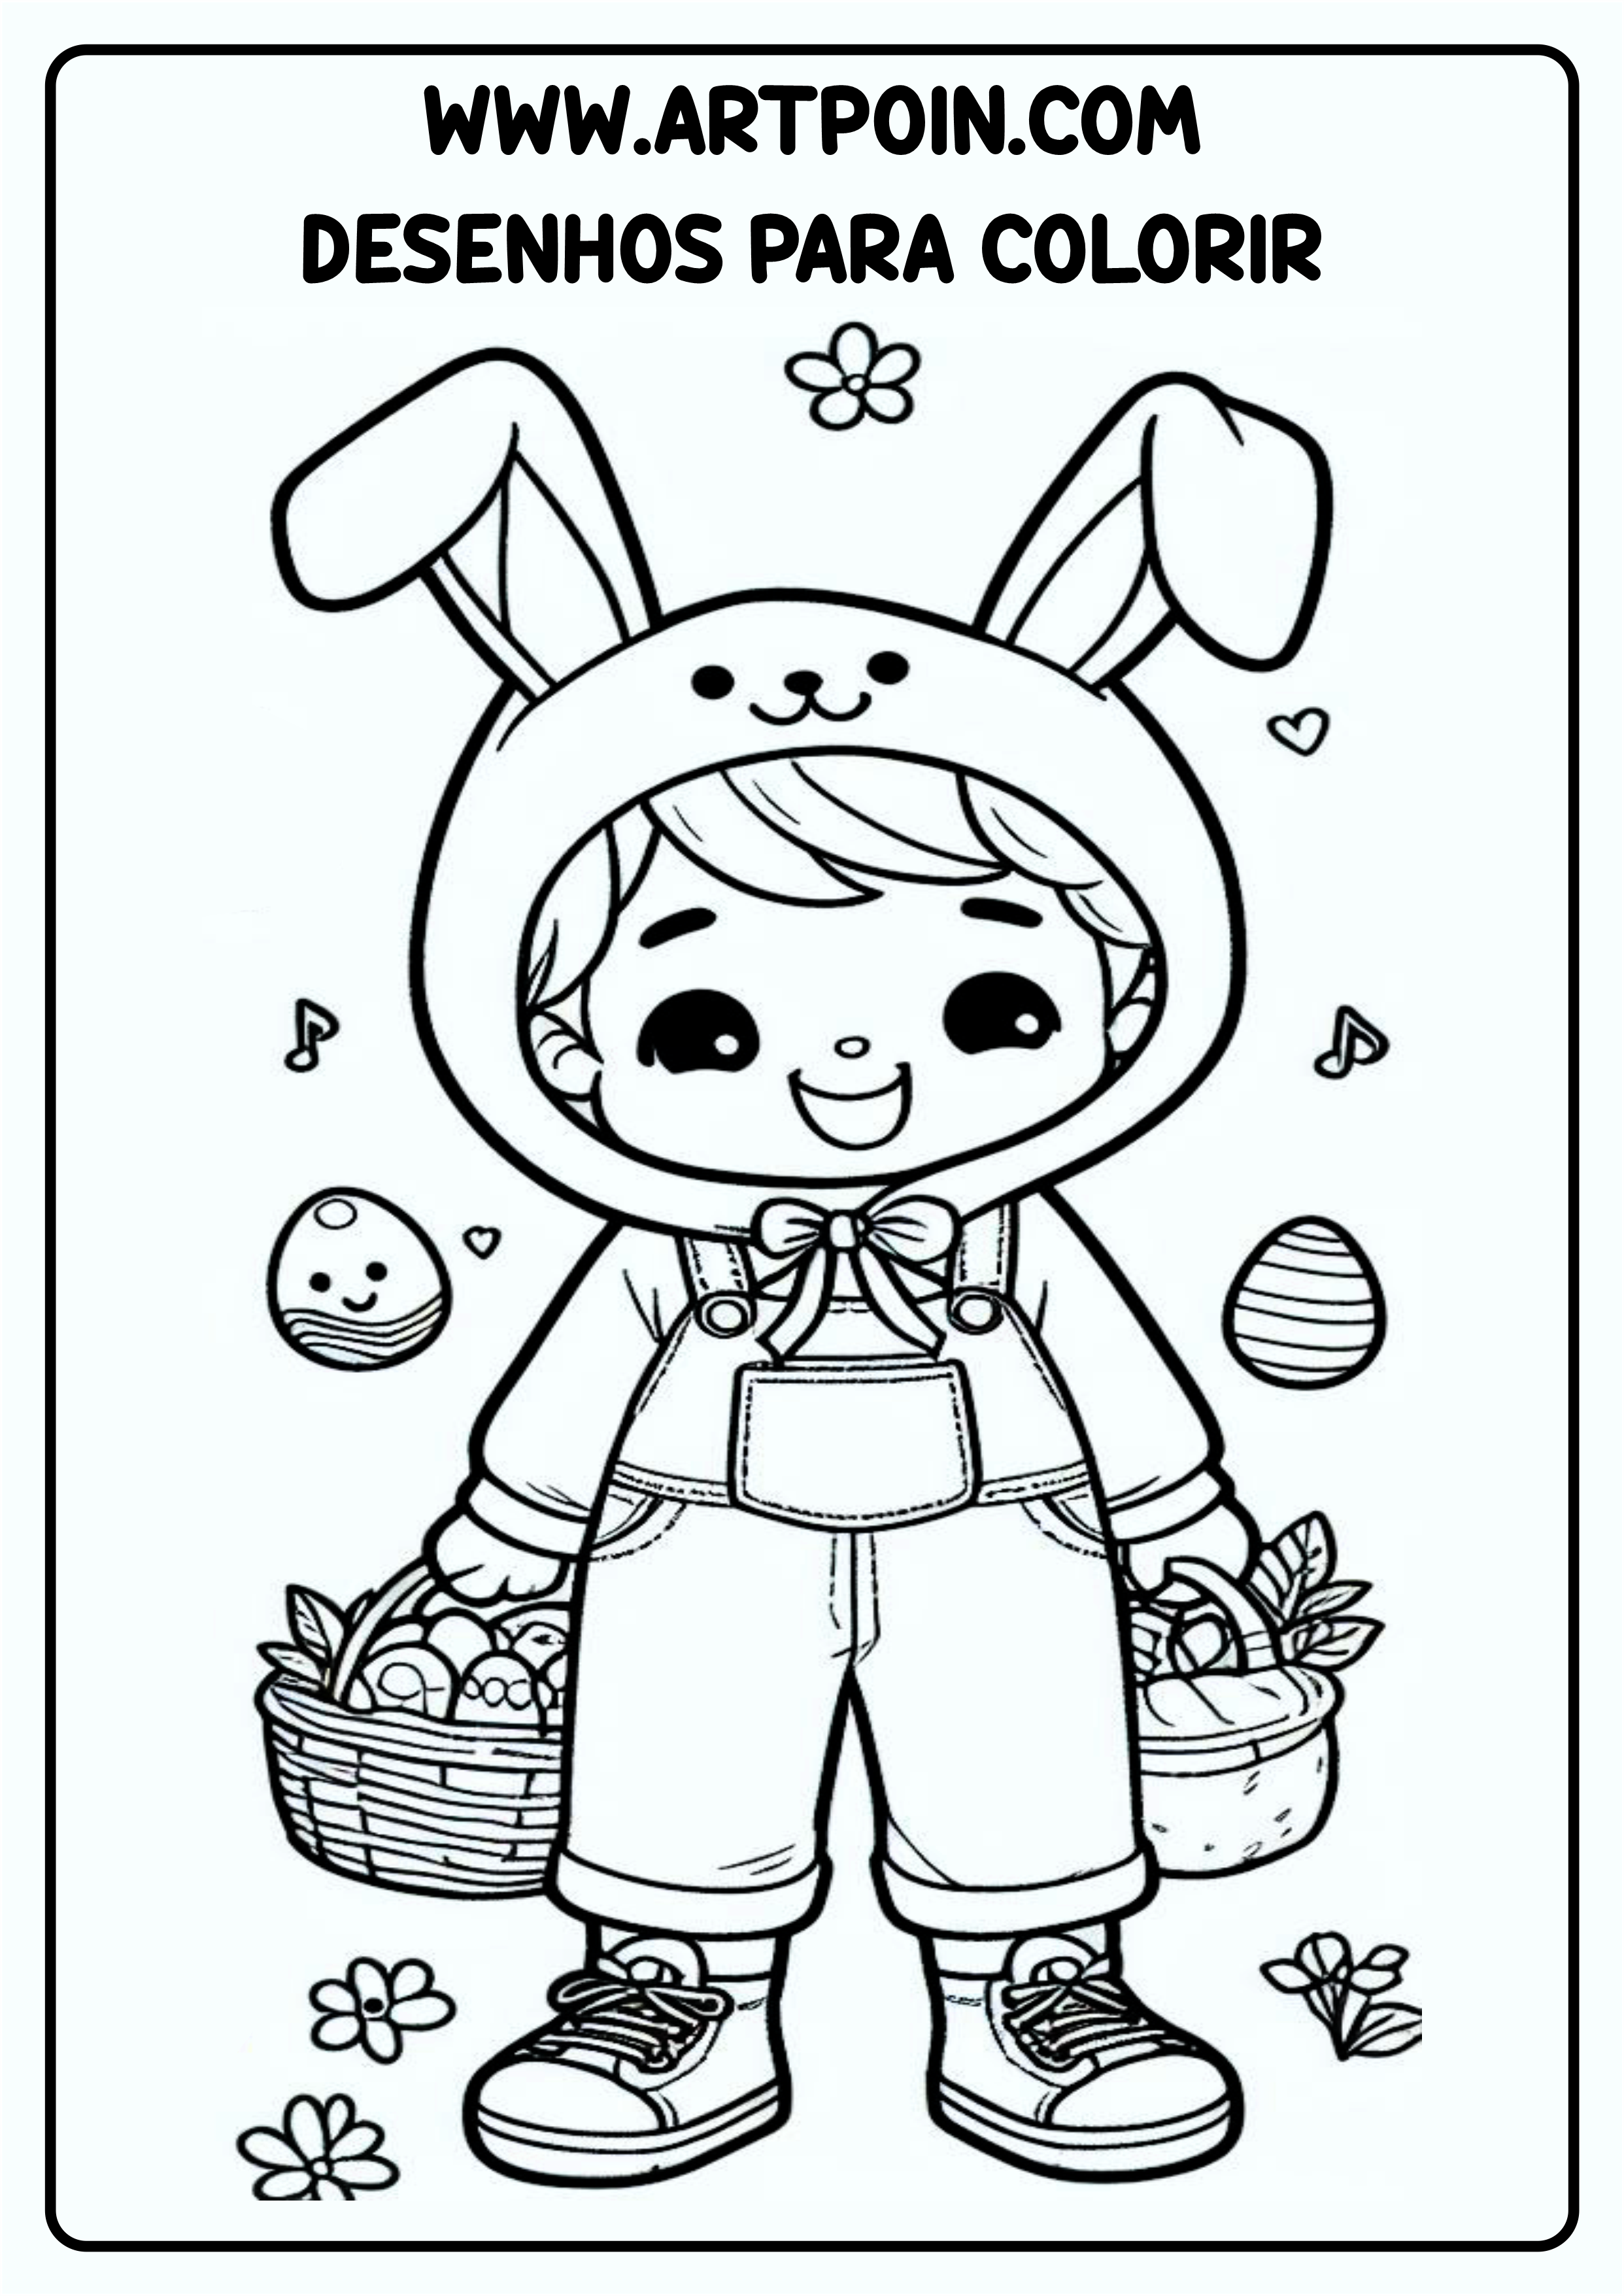 Desenho para colorir menino com roupa de coelhinho da páscoa pronto para imprimir png